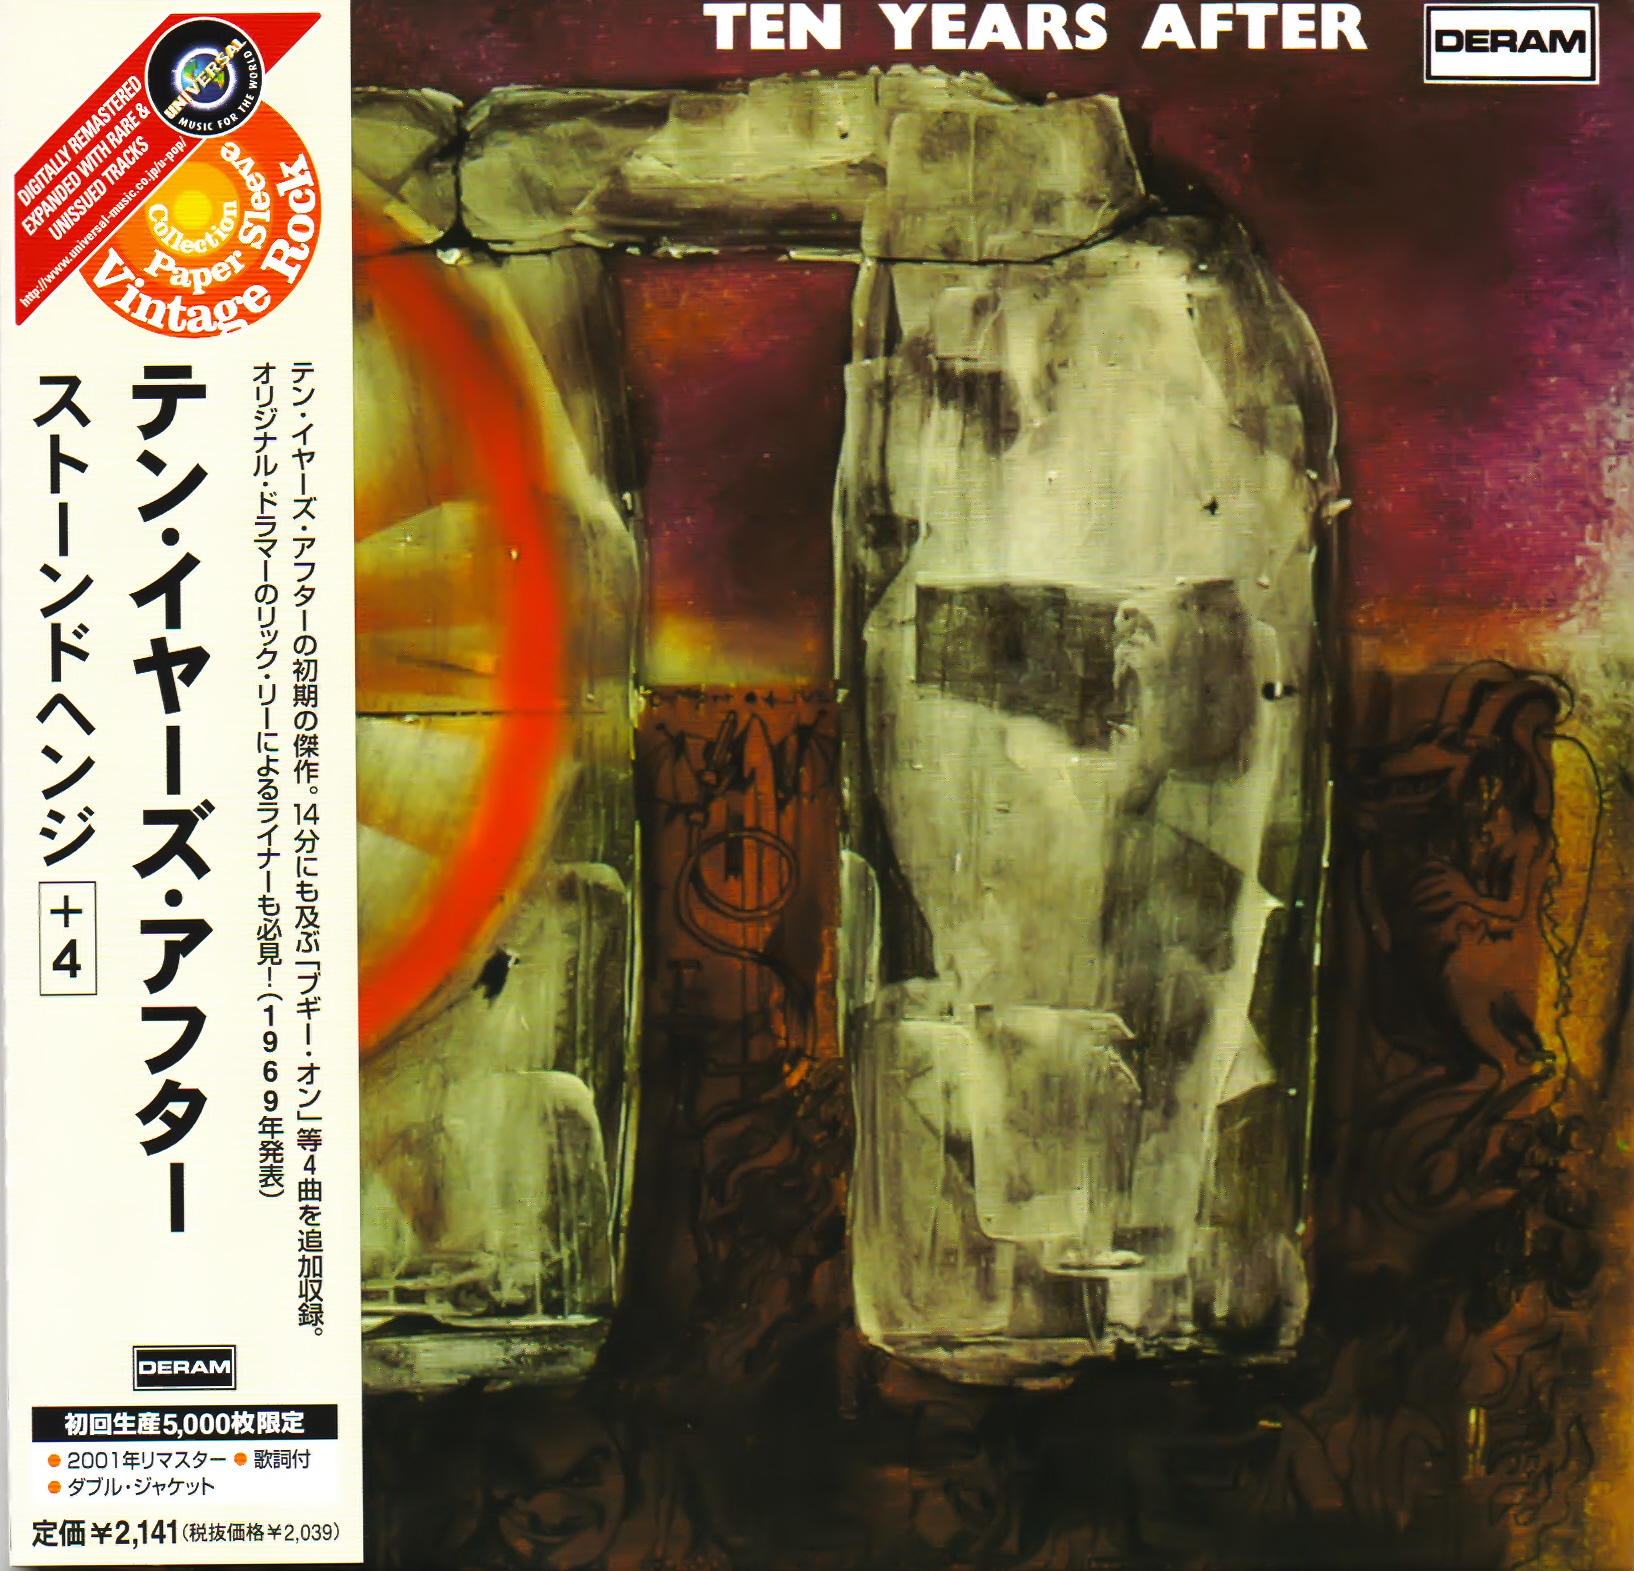 Ten Years After - Stonedhenge [2002 JP Deram Records UICY-9222